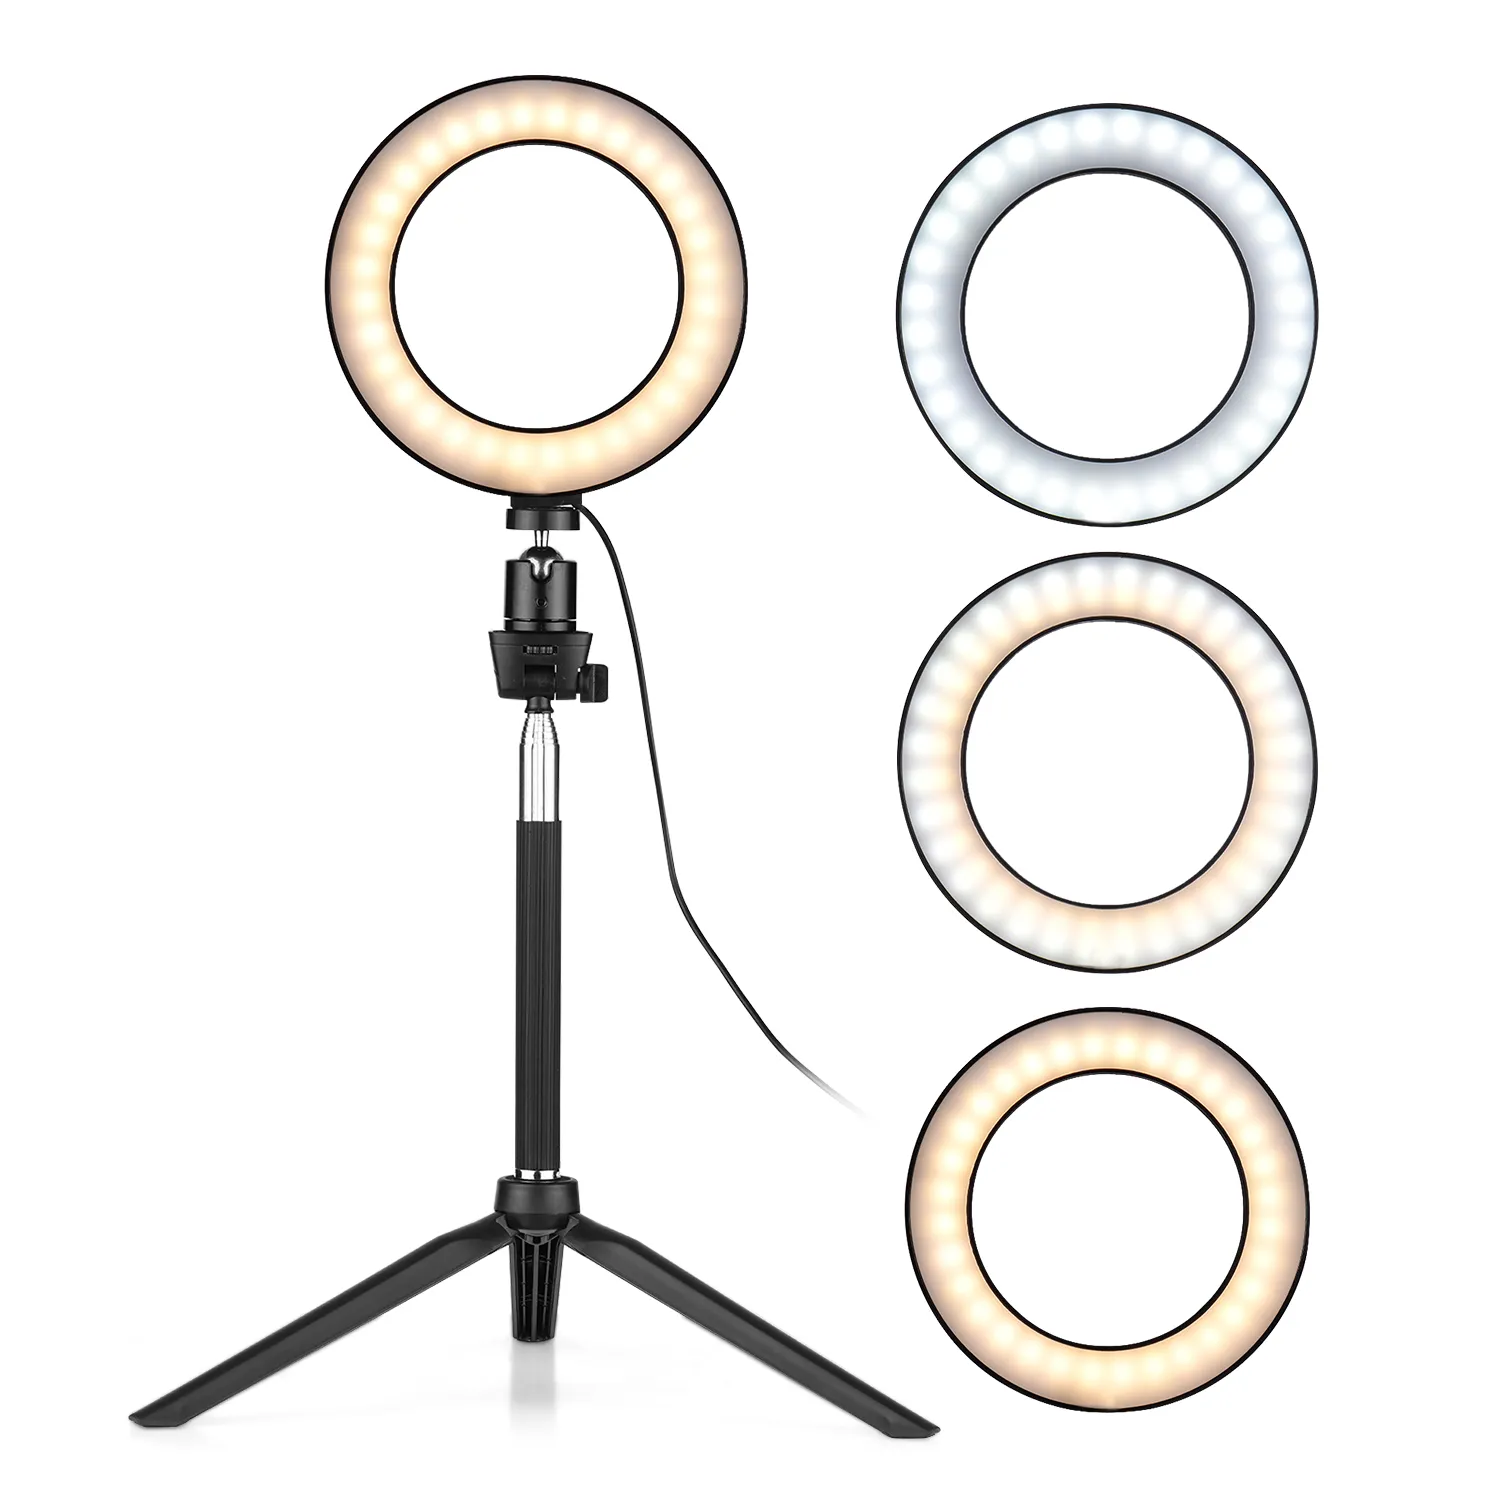 6 بوصة البسيطة LED حلقة مصباح ضوء التصوير عكس الضوء 3 إضاءة وسائط سطح البسيطة ترايبود Ballhead لصورة شخصية التصوير الفوتوغرافي